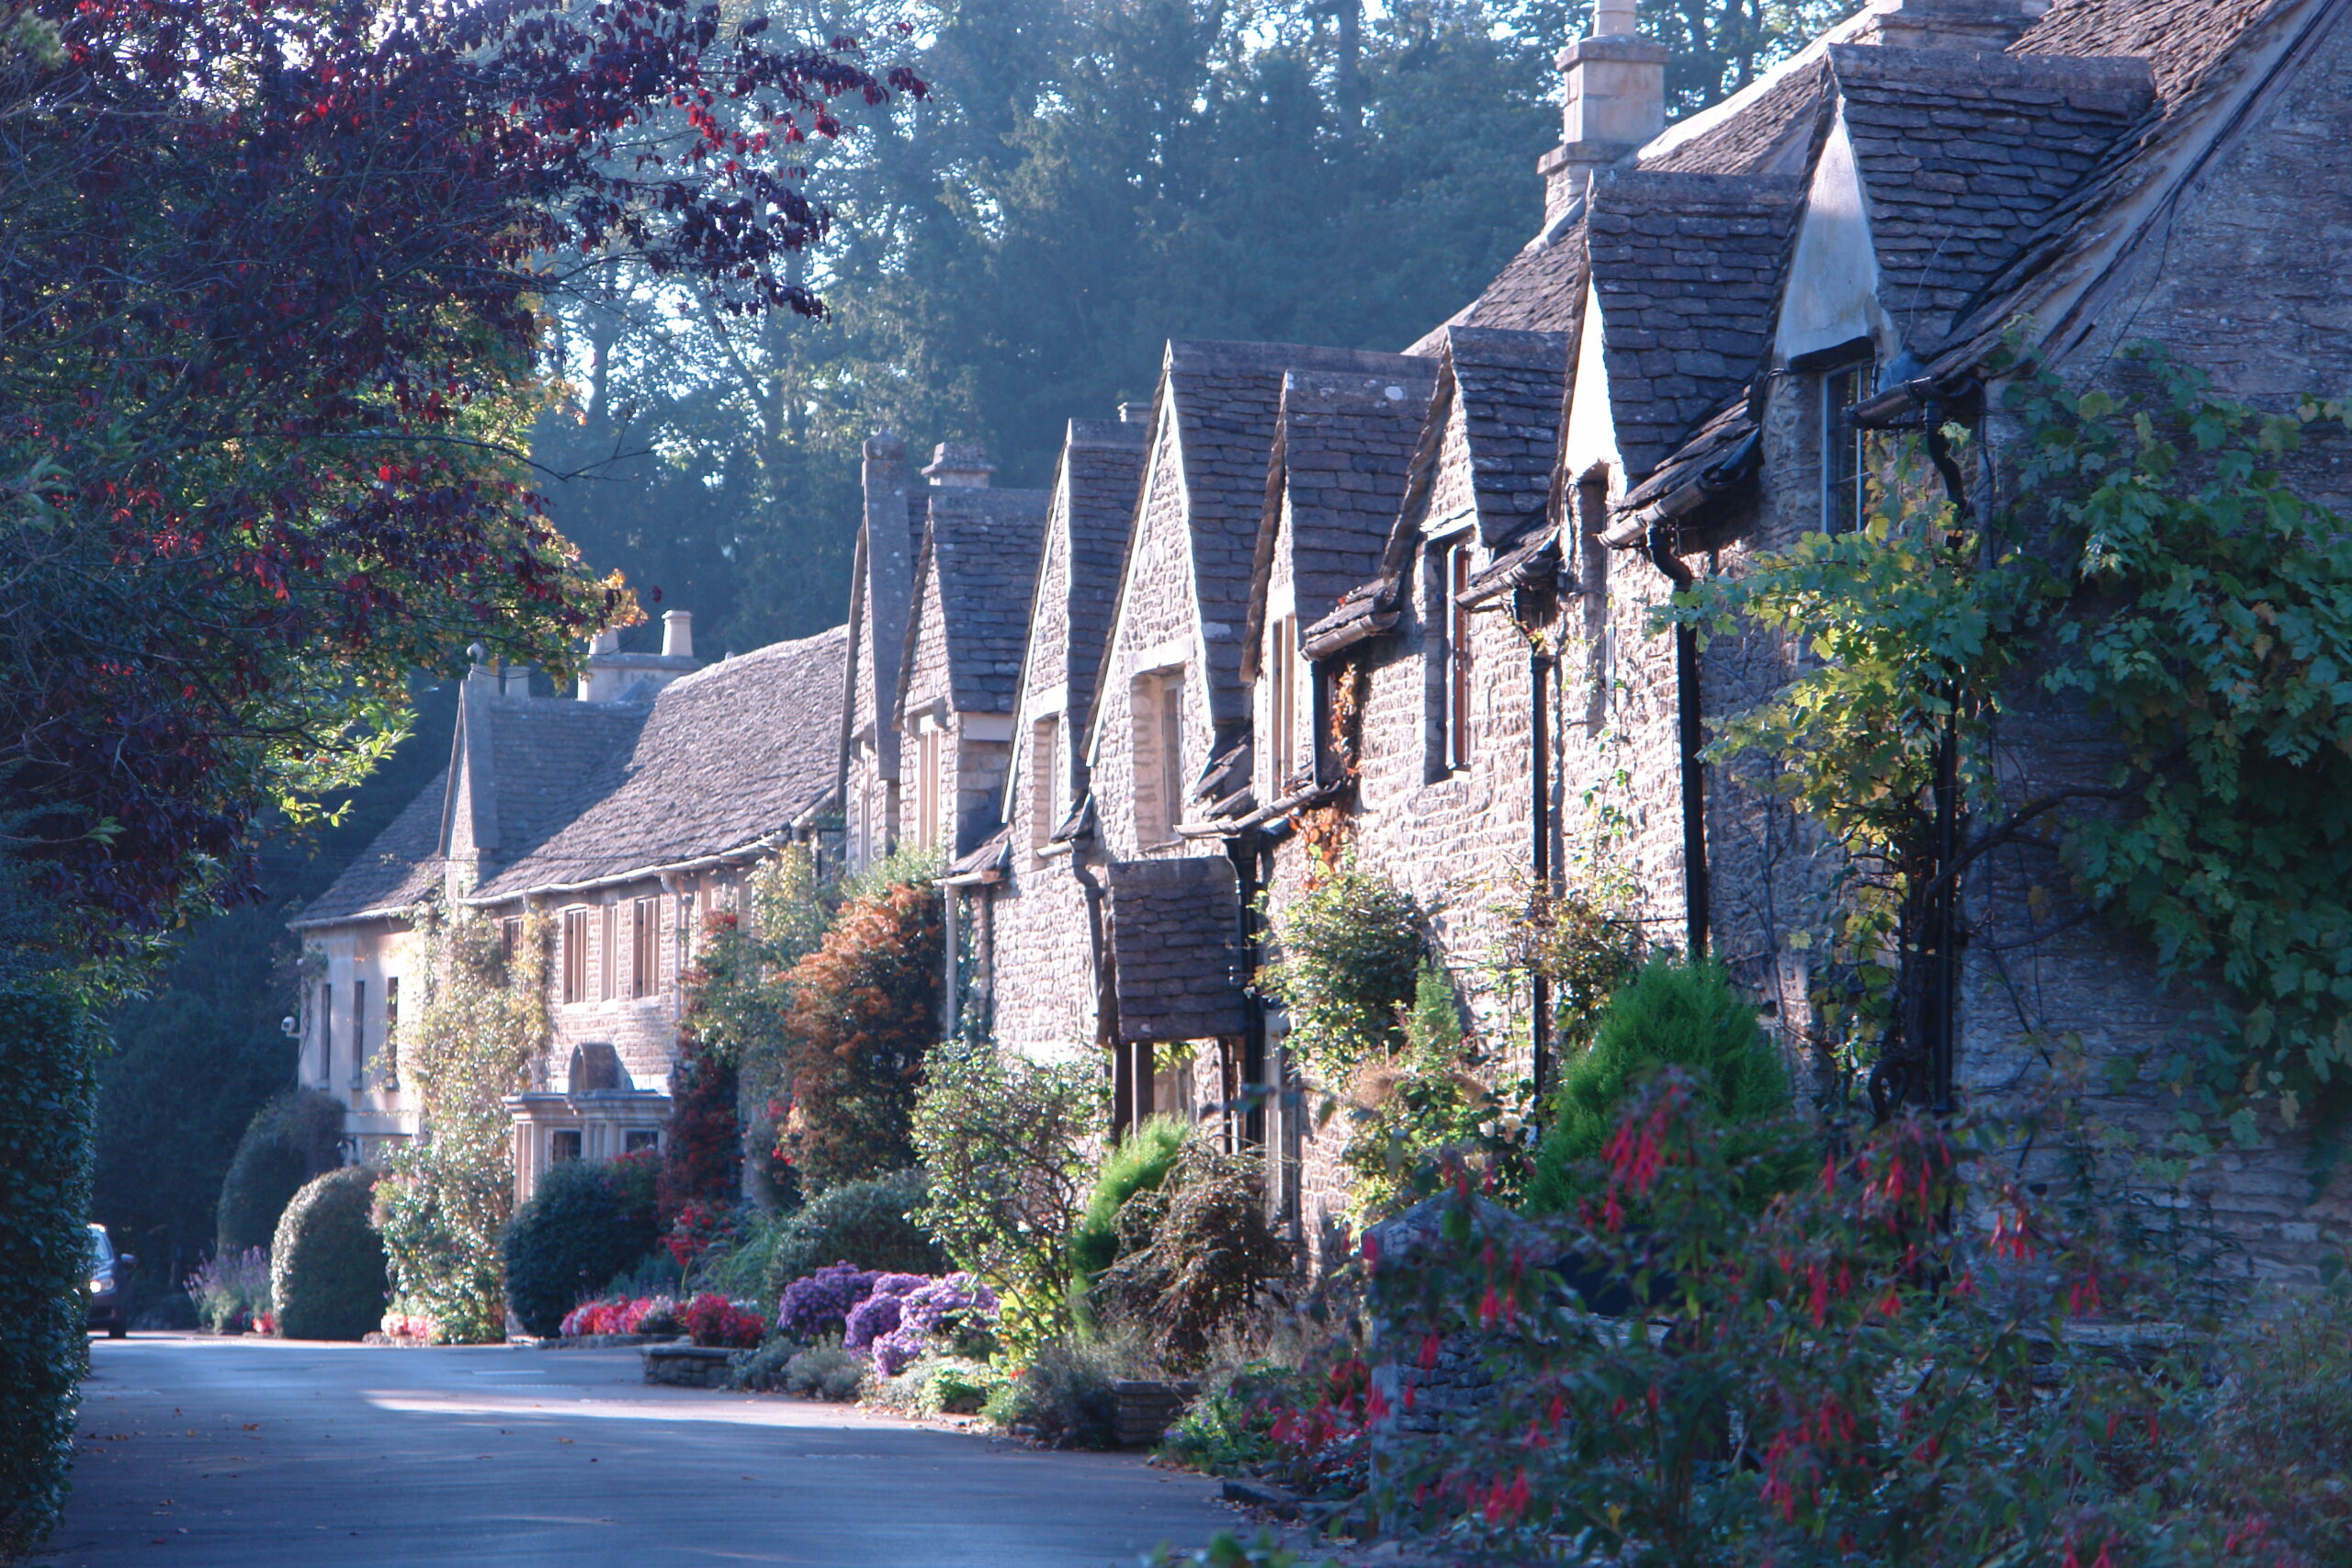 ウイリアムモリスがイギリスで最も美しいと評したバイブリーの村